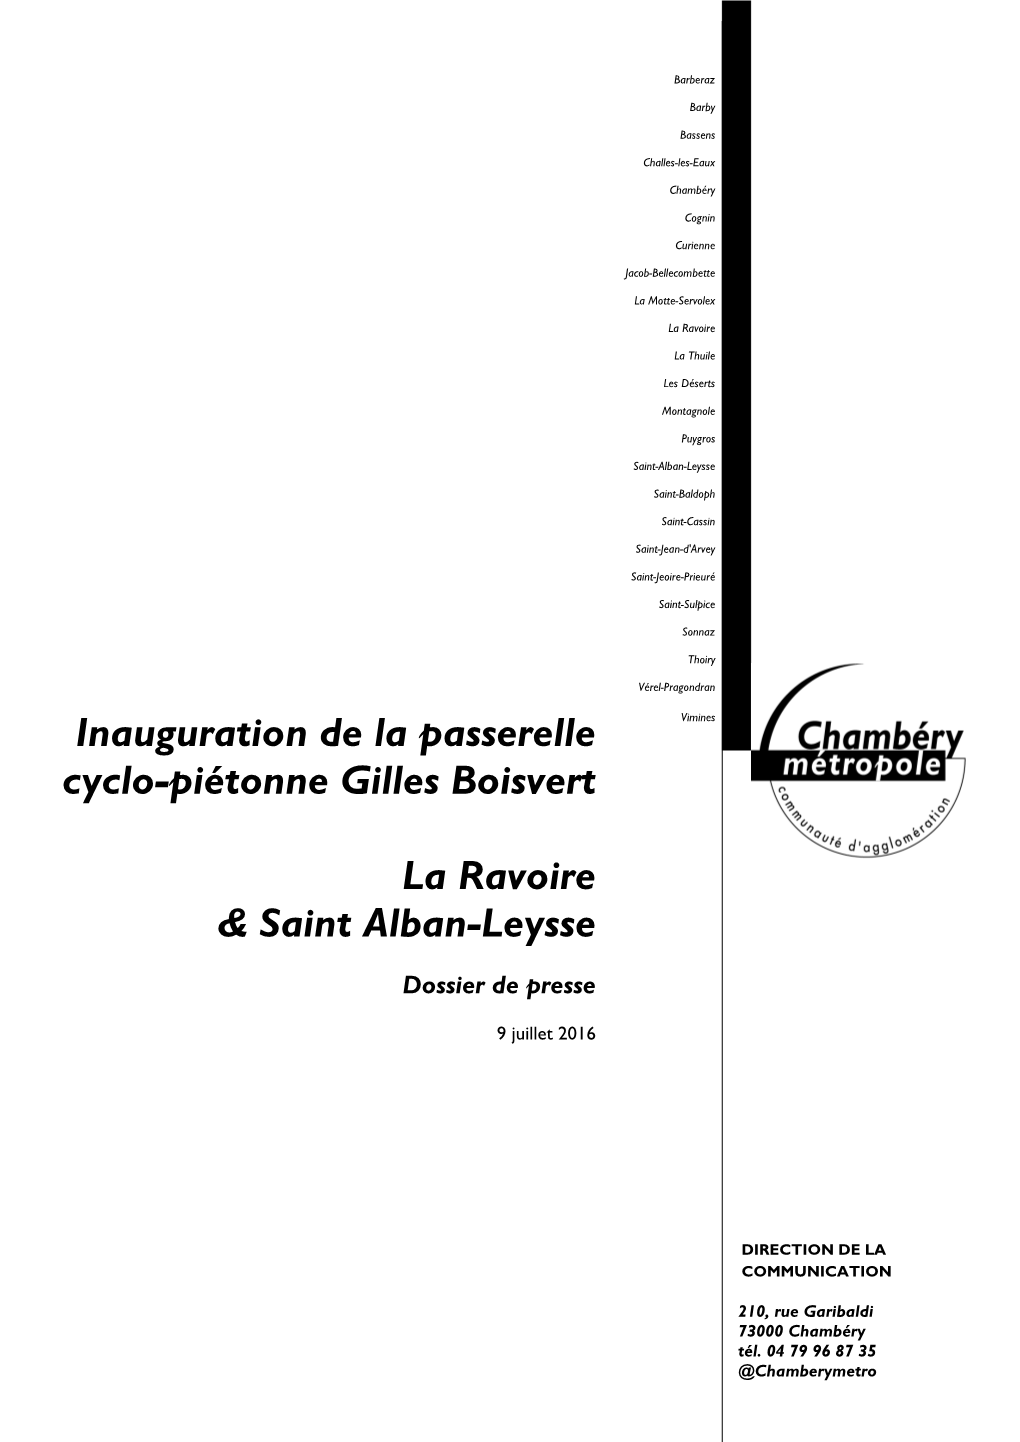 Inauguration De La Passerelle Cyclo-Piétonne Gilles Boisvert La Ravoire & Saint Alban-Leysse